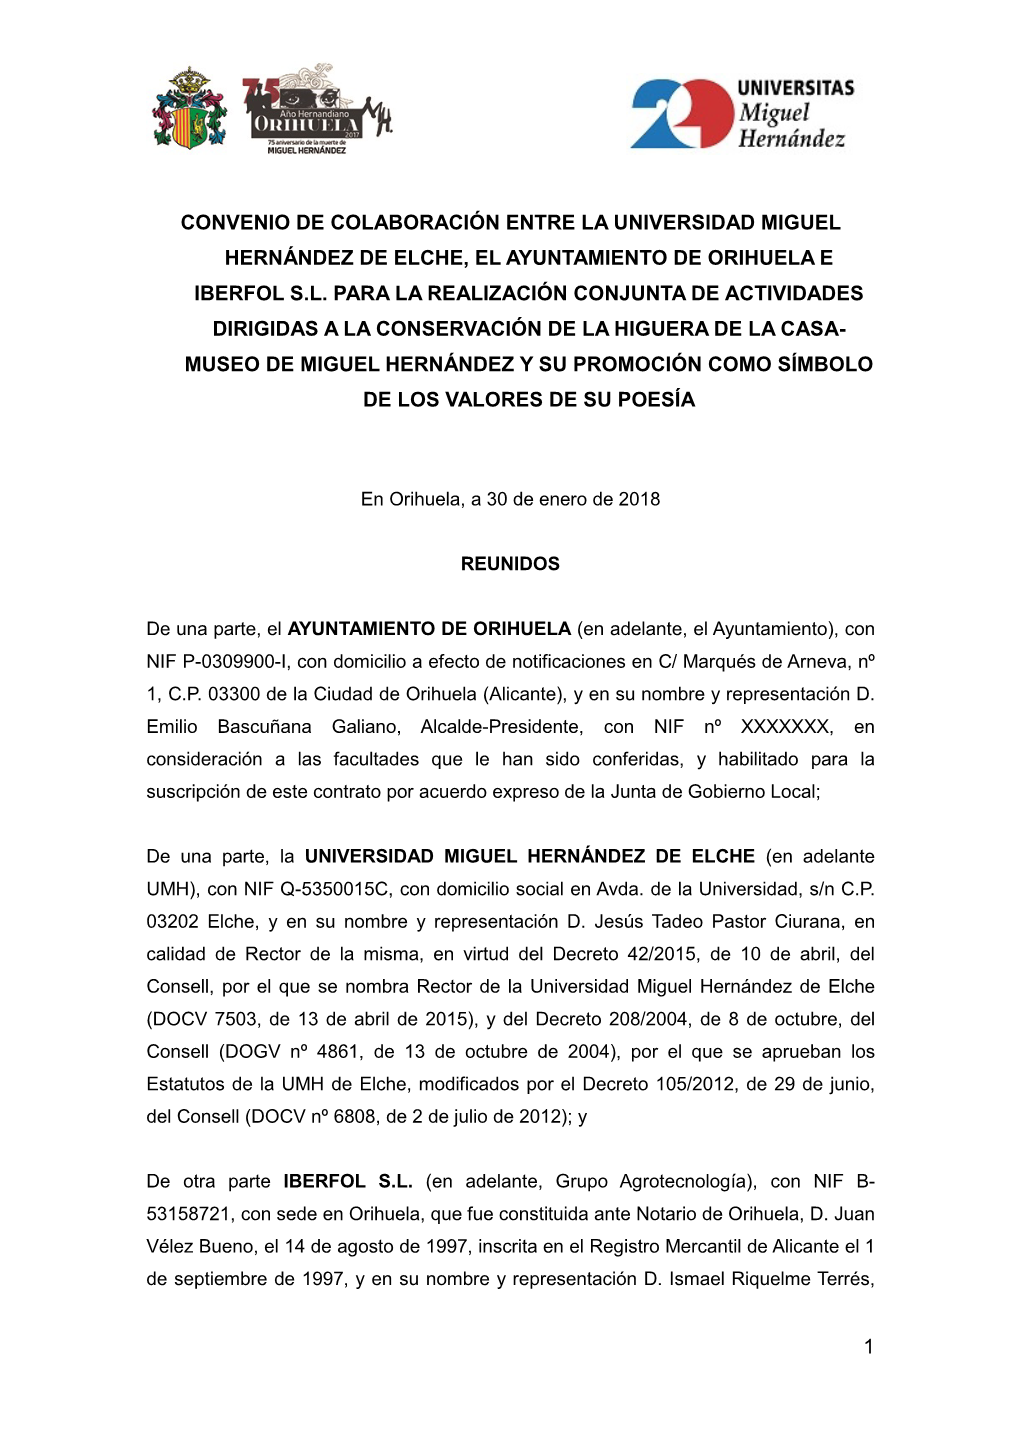 1 Convenio De Colaboración Entre La Universidad Miguel Hernández De Elche, El Ayuntamiento De Orihuela E Iberfol S.L. Para La